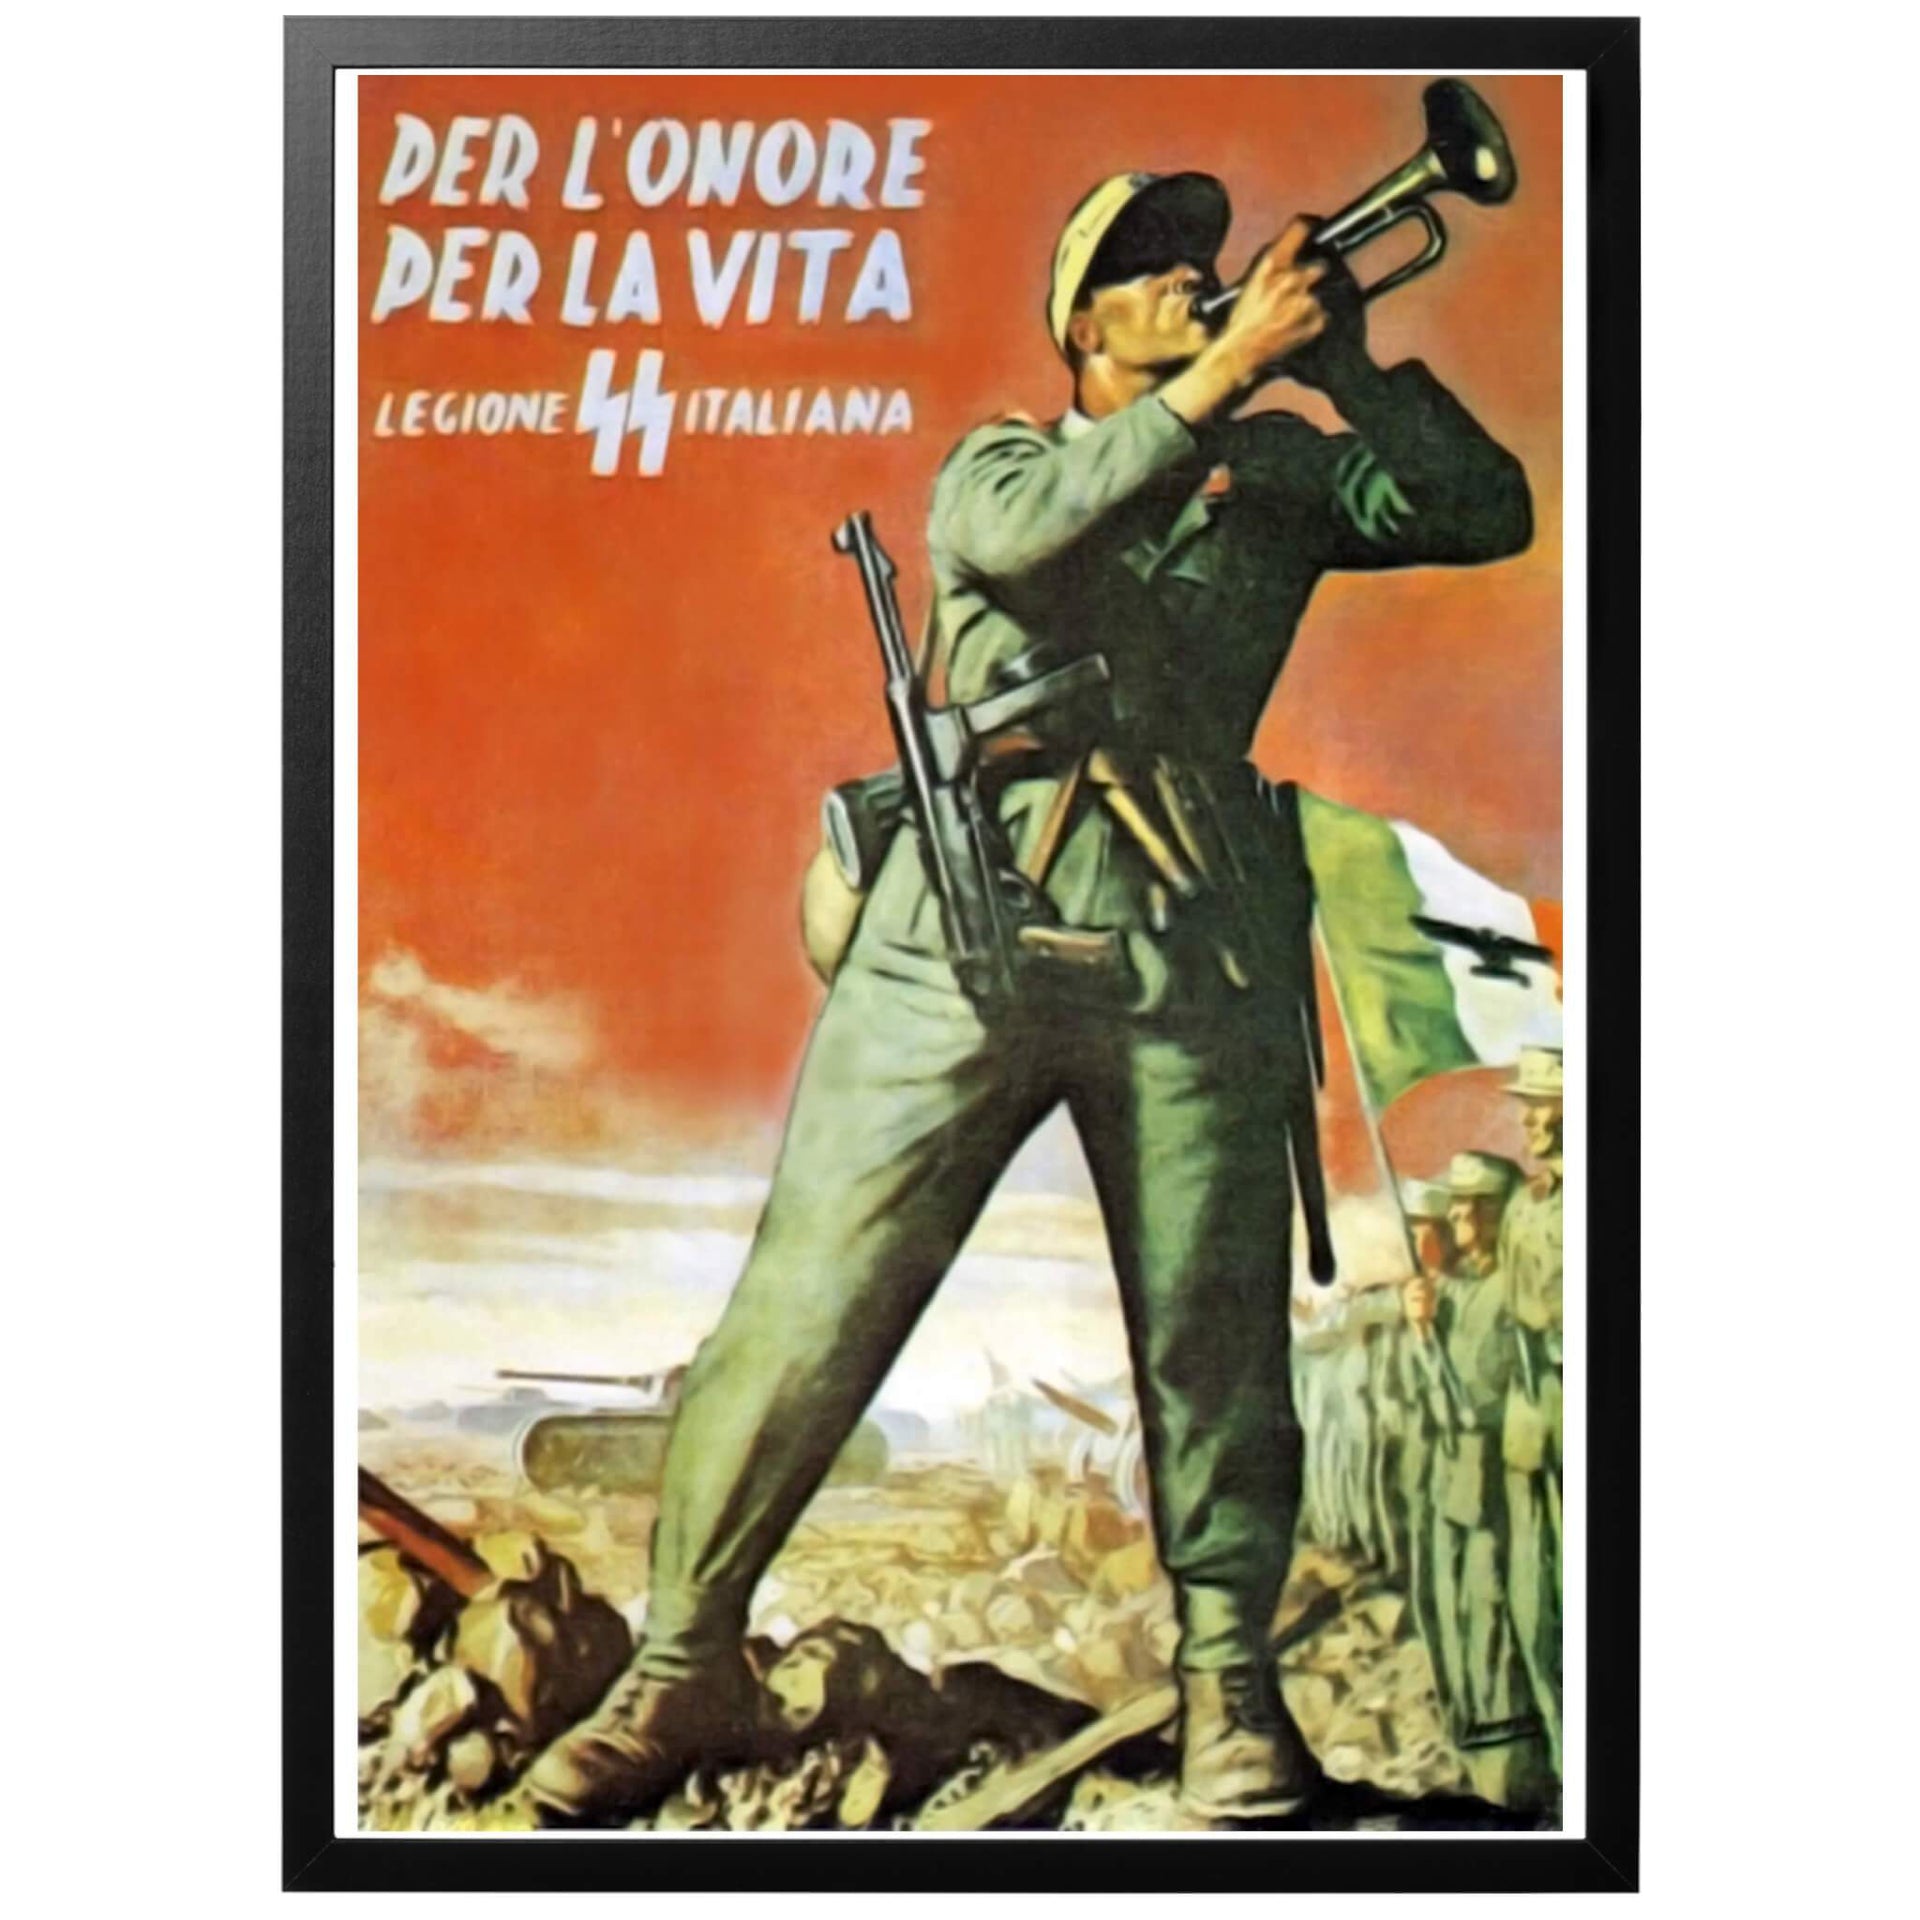 Per l'onore - Per la vita - Legione SS Italiana Sv - "För äran - För livet - Italienska SS-legionen" Italiensk WWII affisch Årtal: 1943. Affischens historia Italiensk rekryteringsposter för den italienska SS-divisonen, som skapades 1943 i den sk. Salòrepubliken.  Välj till ram - och få din poster inramad och klar!